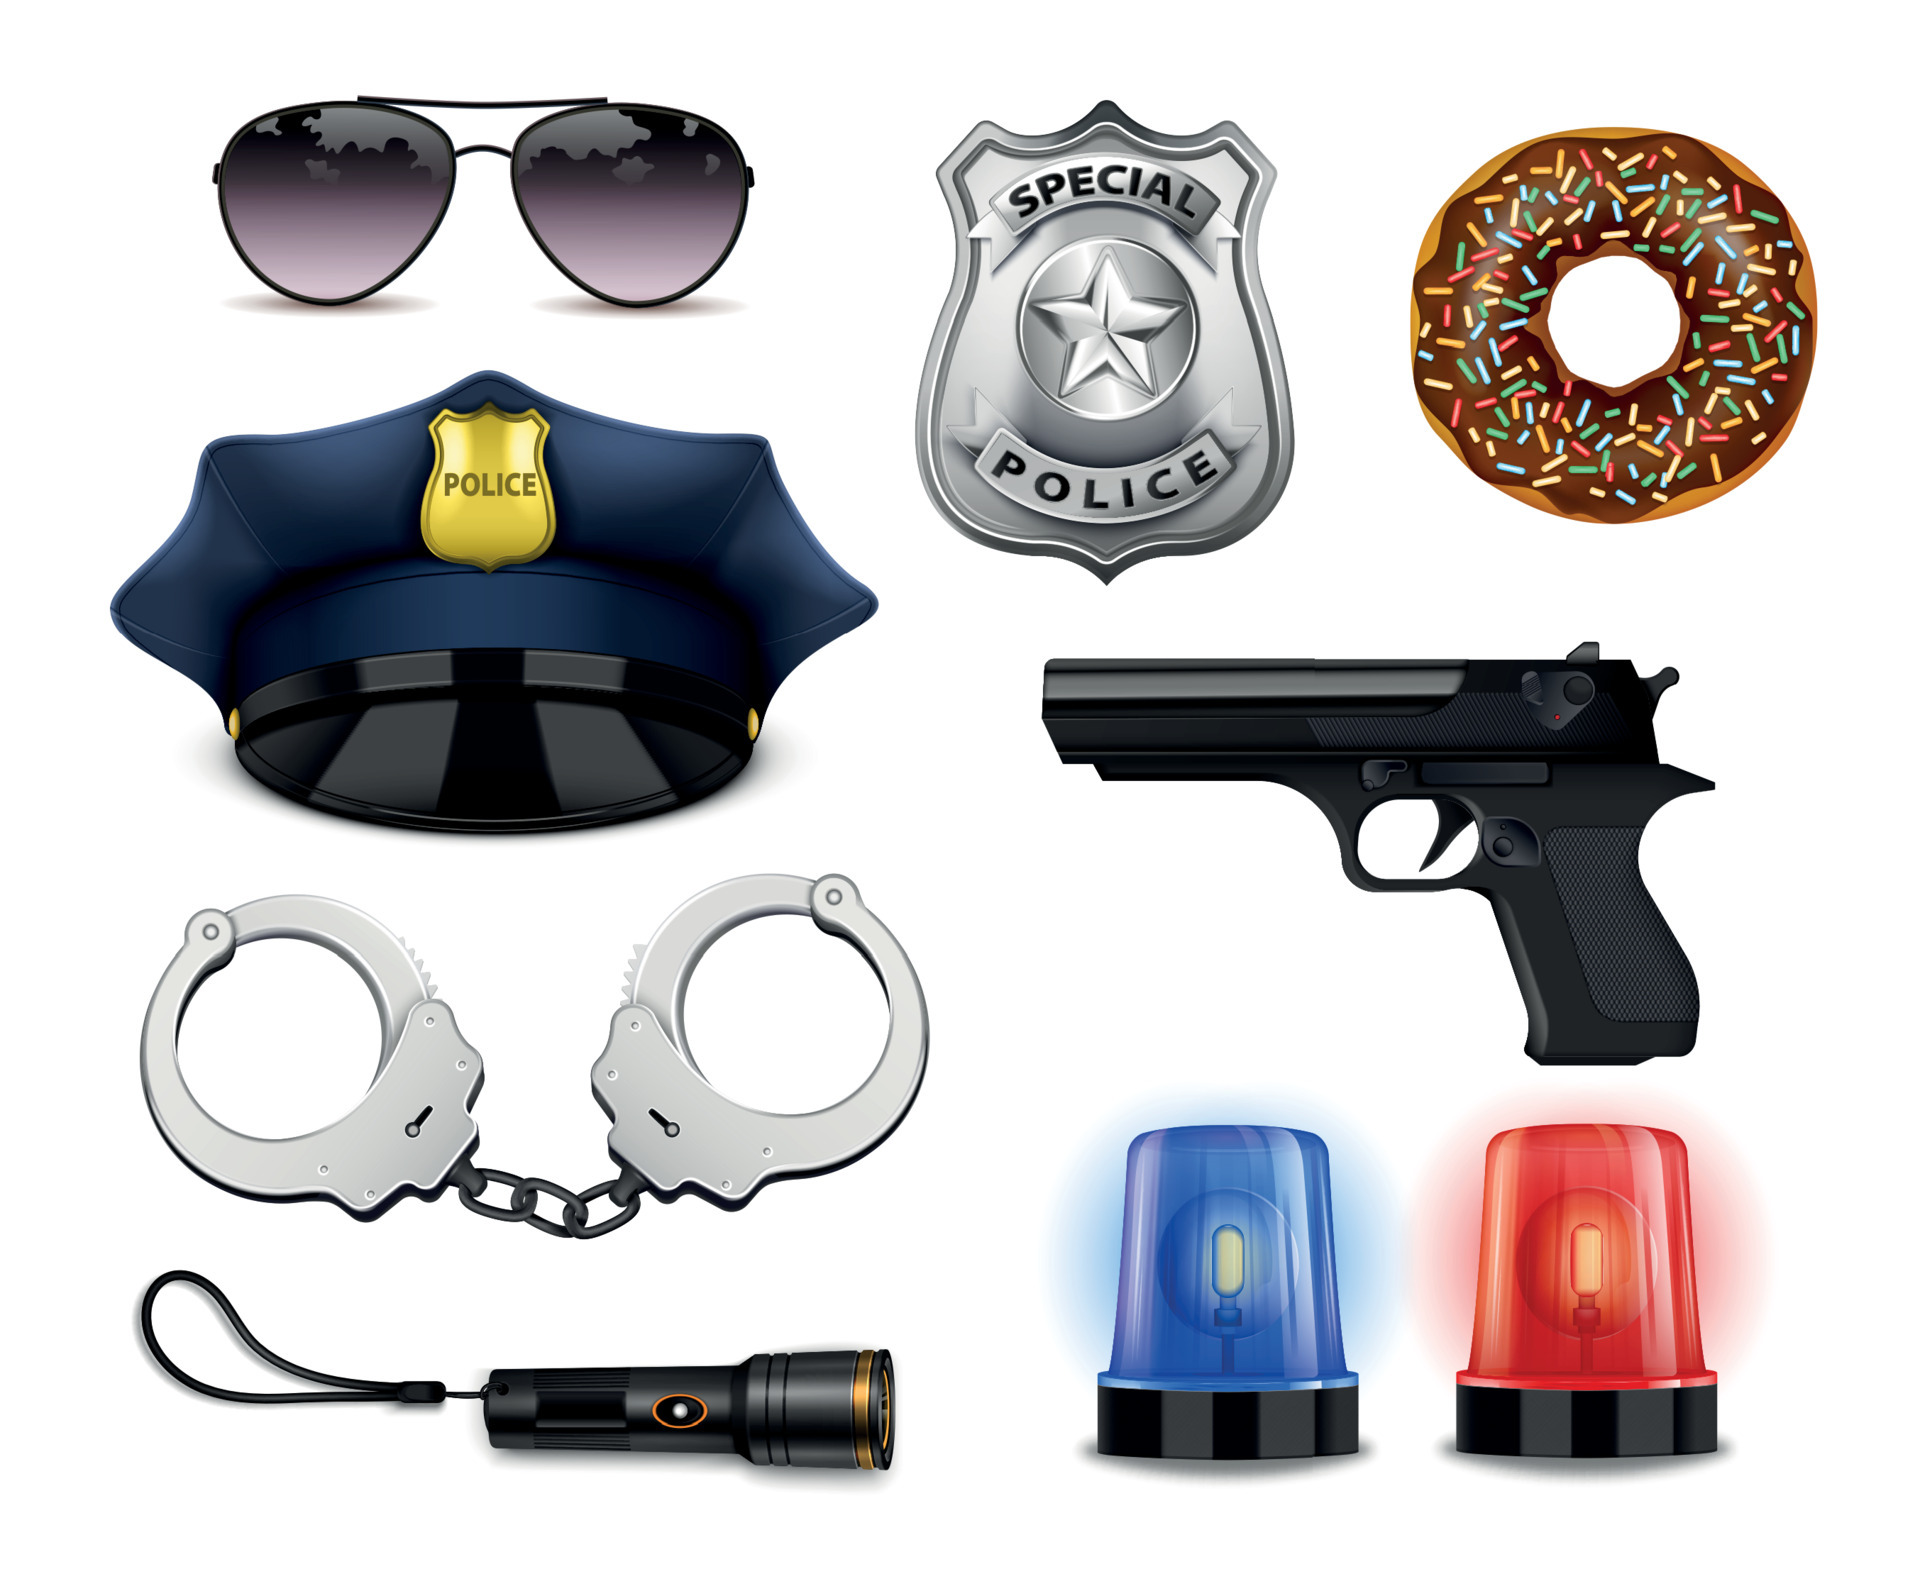 Conjunto de iconos de policía. Equipo y accesorios .Vector ilustración  Vector de stock por ©Margorita 81179176